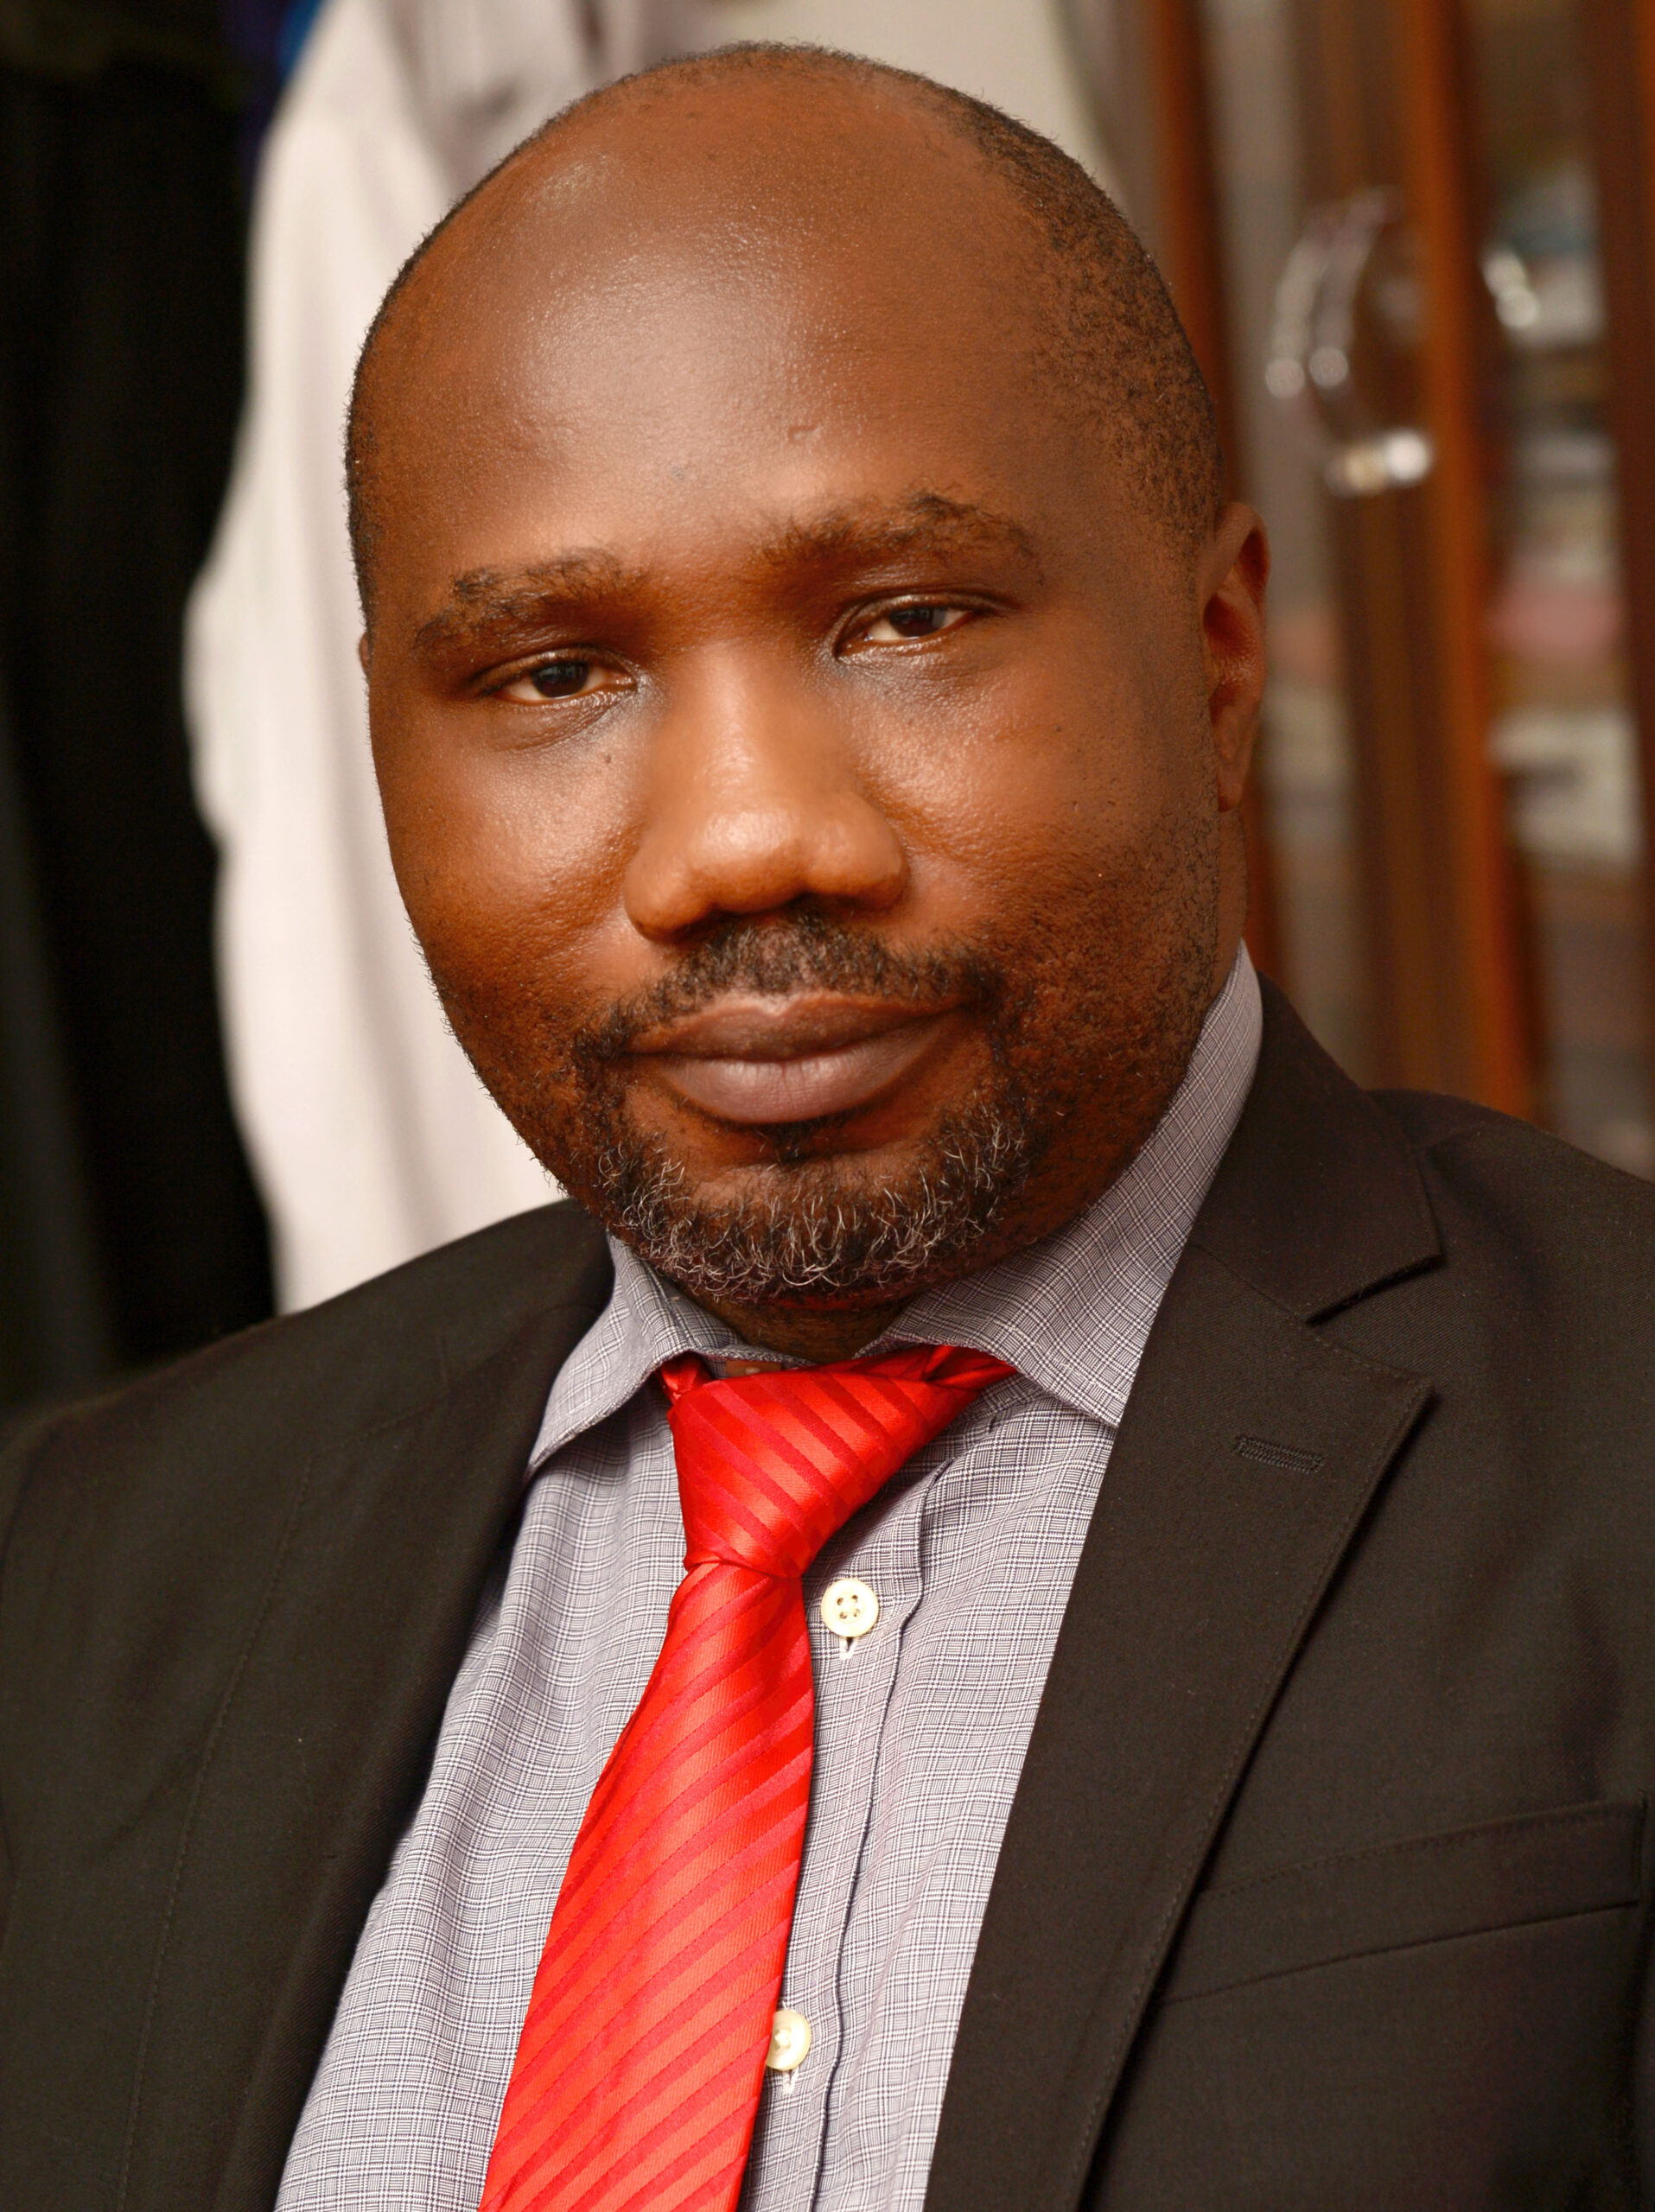 Dra. Dimie Ogoina, profesora de medicina y enfermedades infecciosas en la Universidad del Delta del Níger en Nigeria.  (NIDS - Sociedad de Enfermedades Infecciosas de Nigeria)